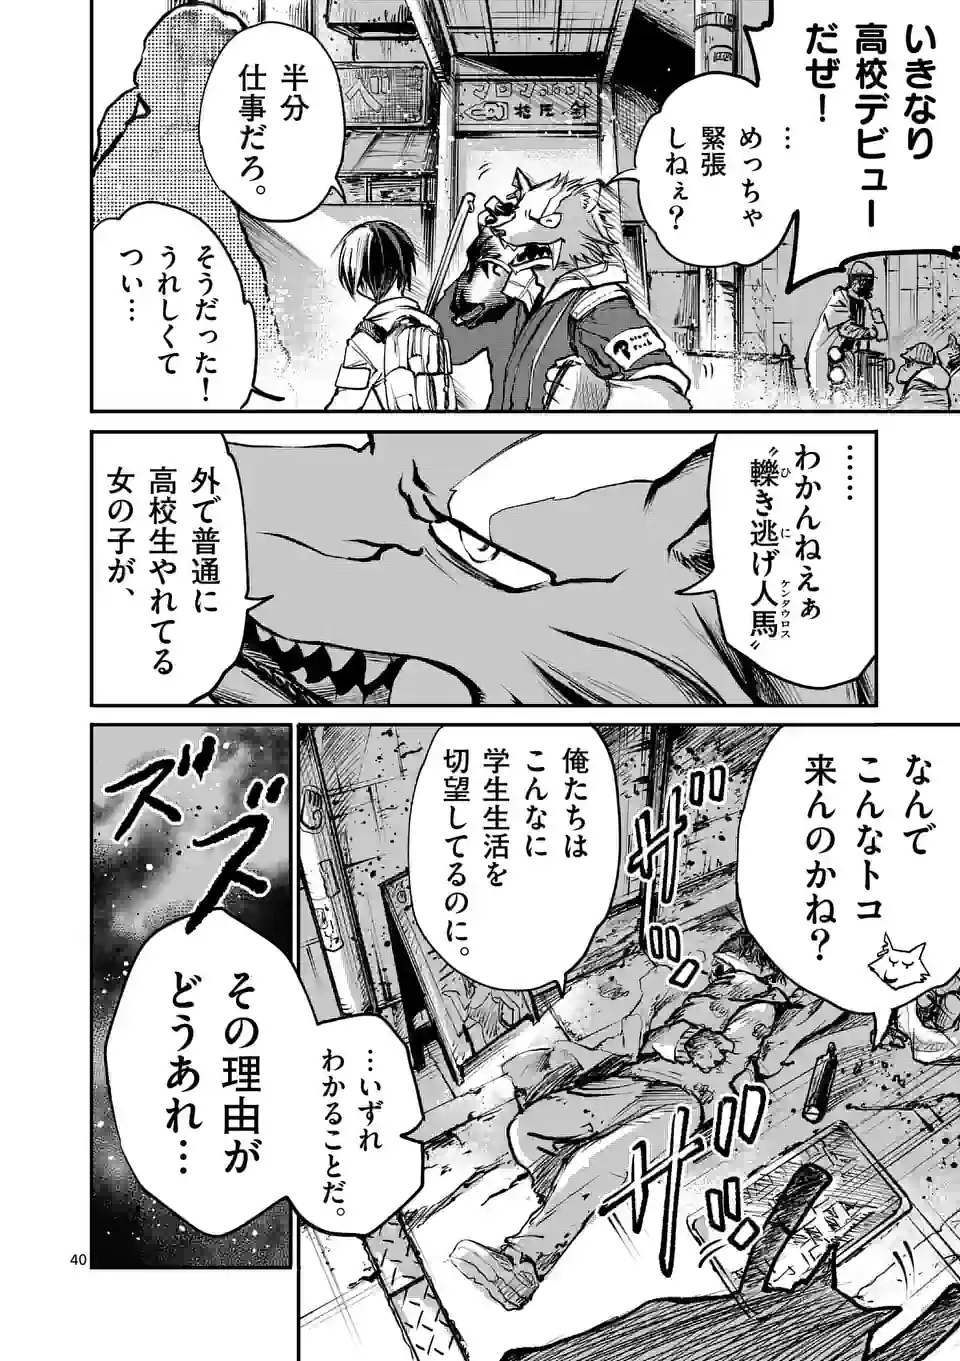 怪物中毒@comic 第1話 - Page 40